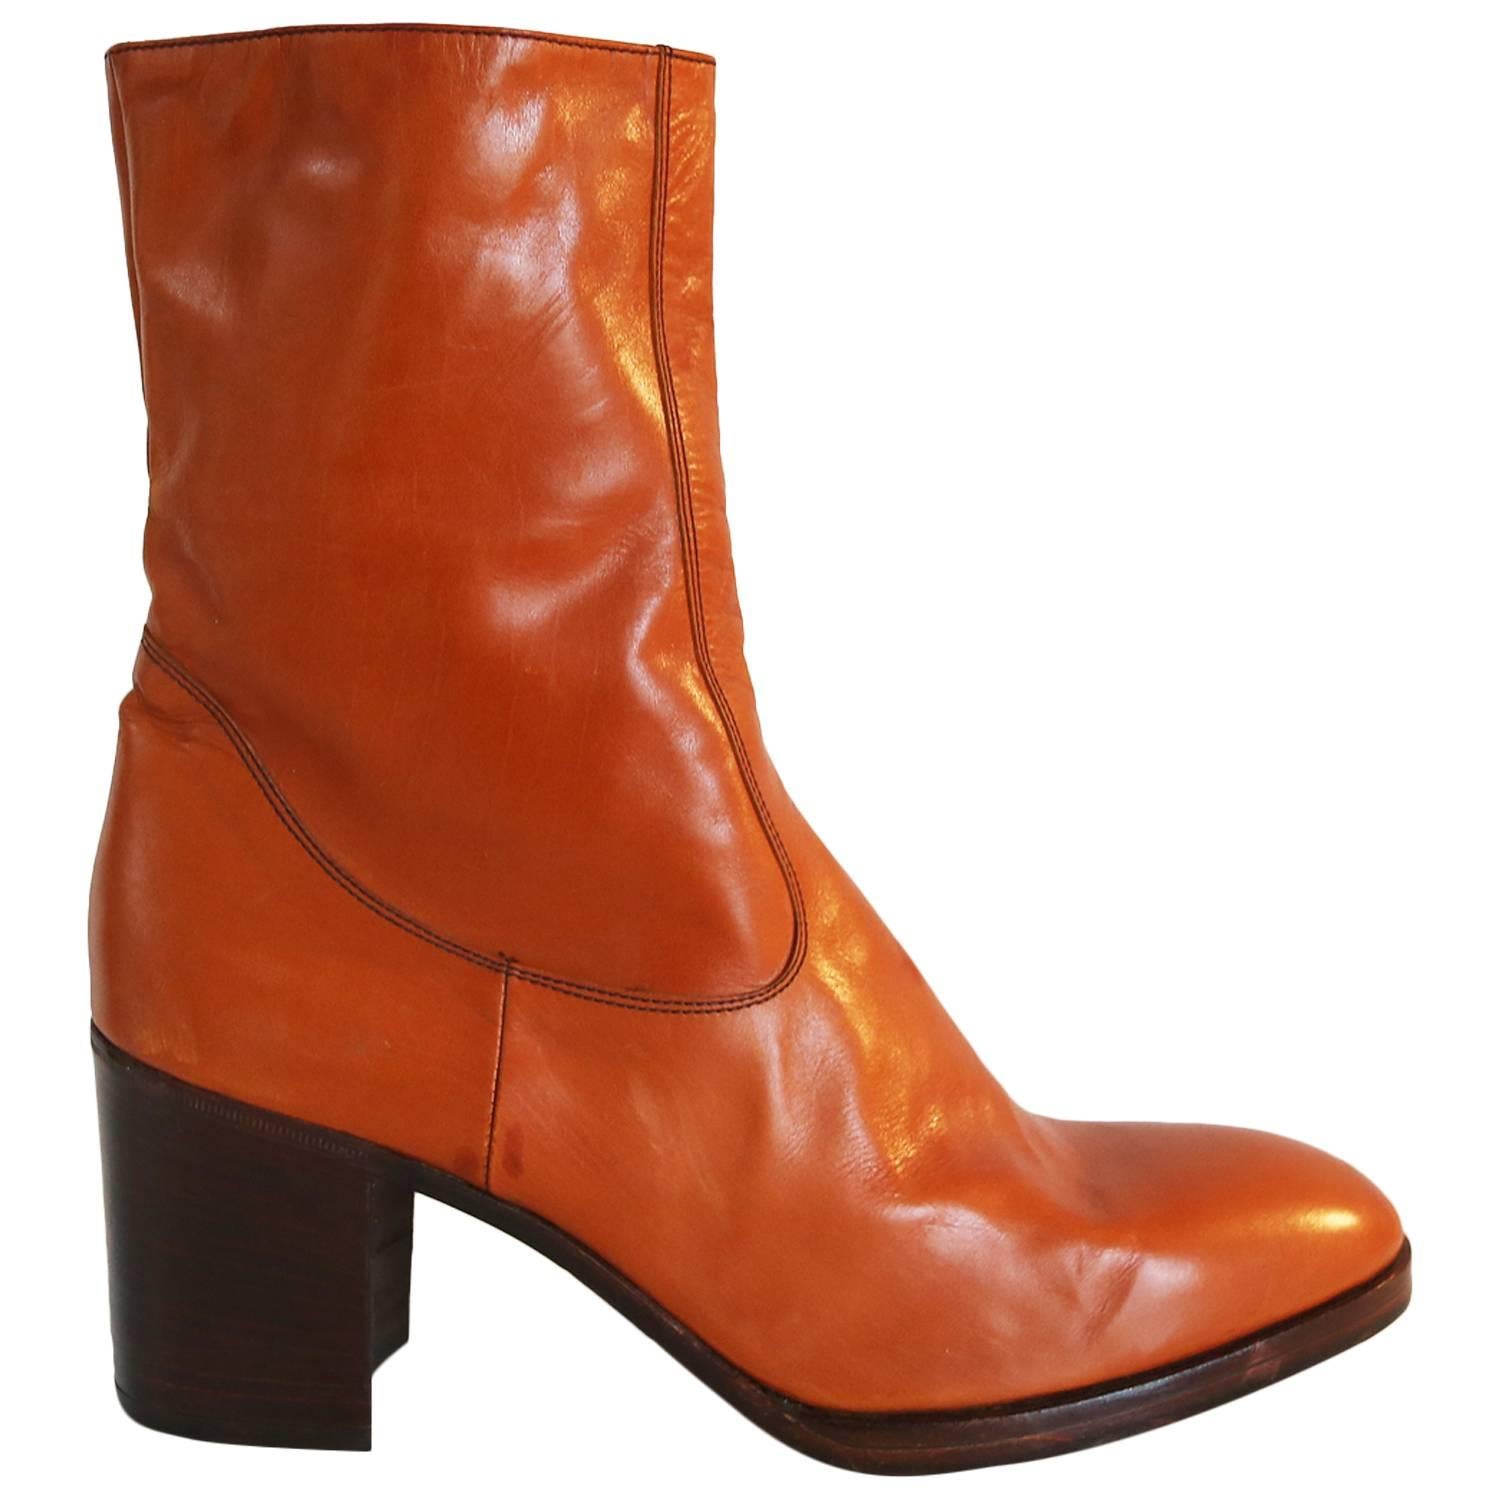 Jocelyn mens orange platform boots in Italian leather, c. 1970s